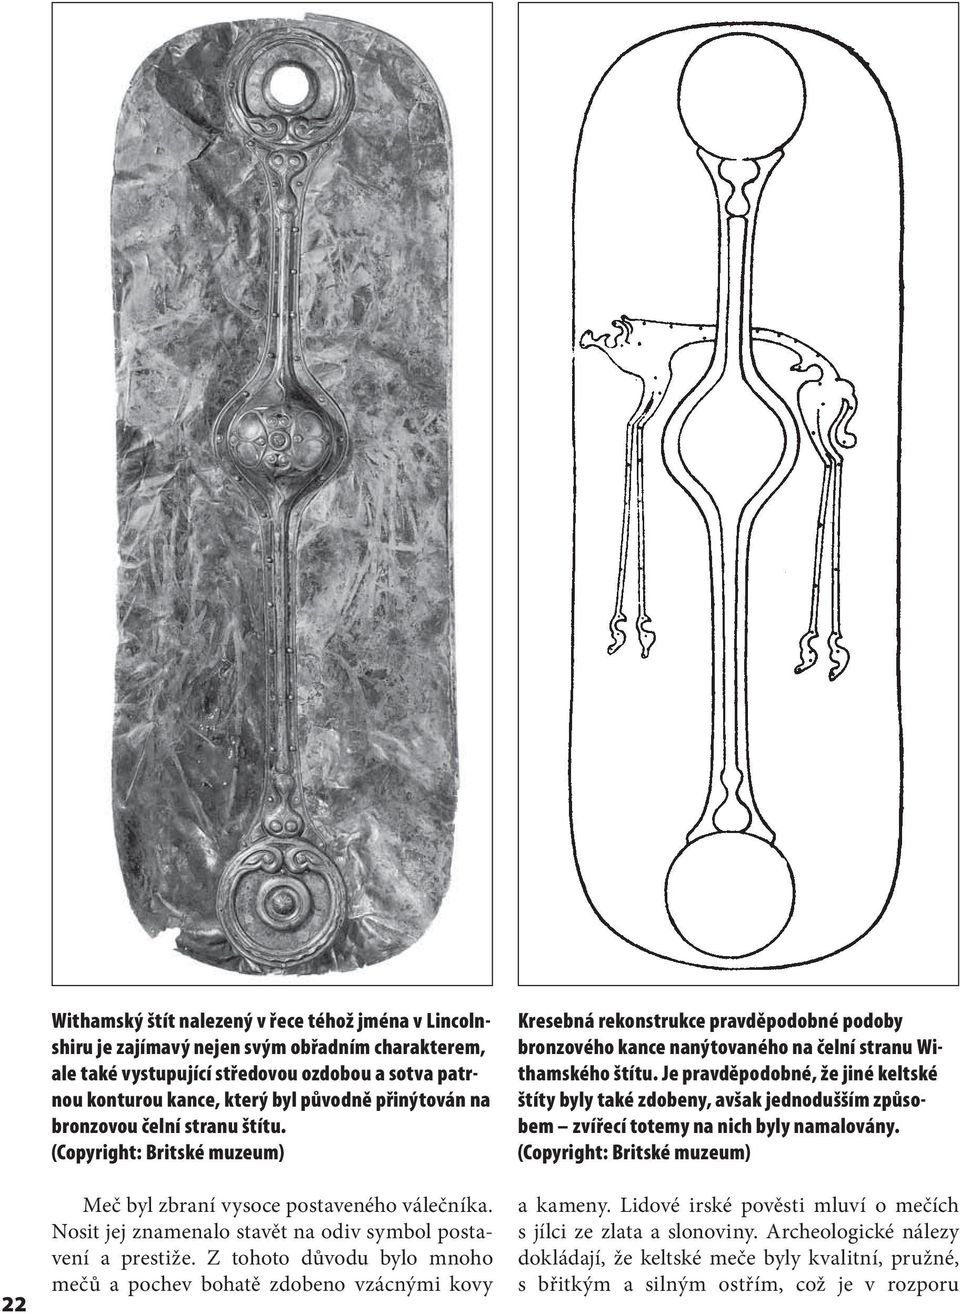 Z tohoto důvodu bylo mnoho mečů a pochev bohatě zdobeno vzácnými kovy Kresebná rekonstrukce pravděpodobné podoby bronzového kance nanýtovaného na čelní stranu Withamského štítu.